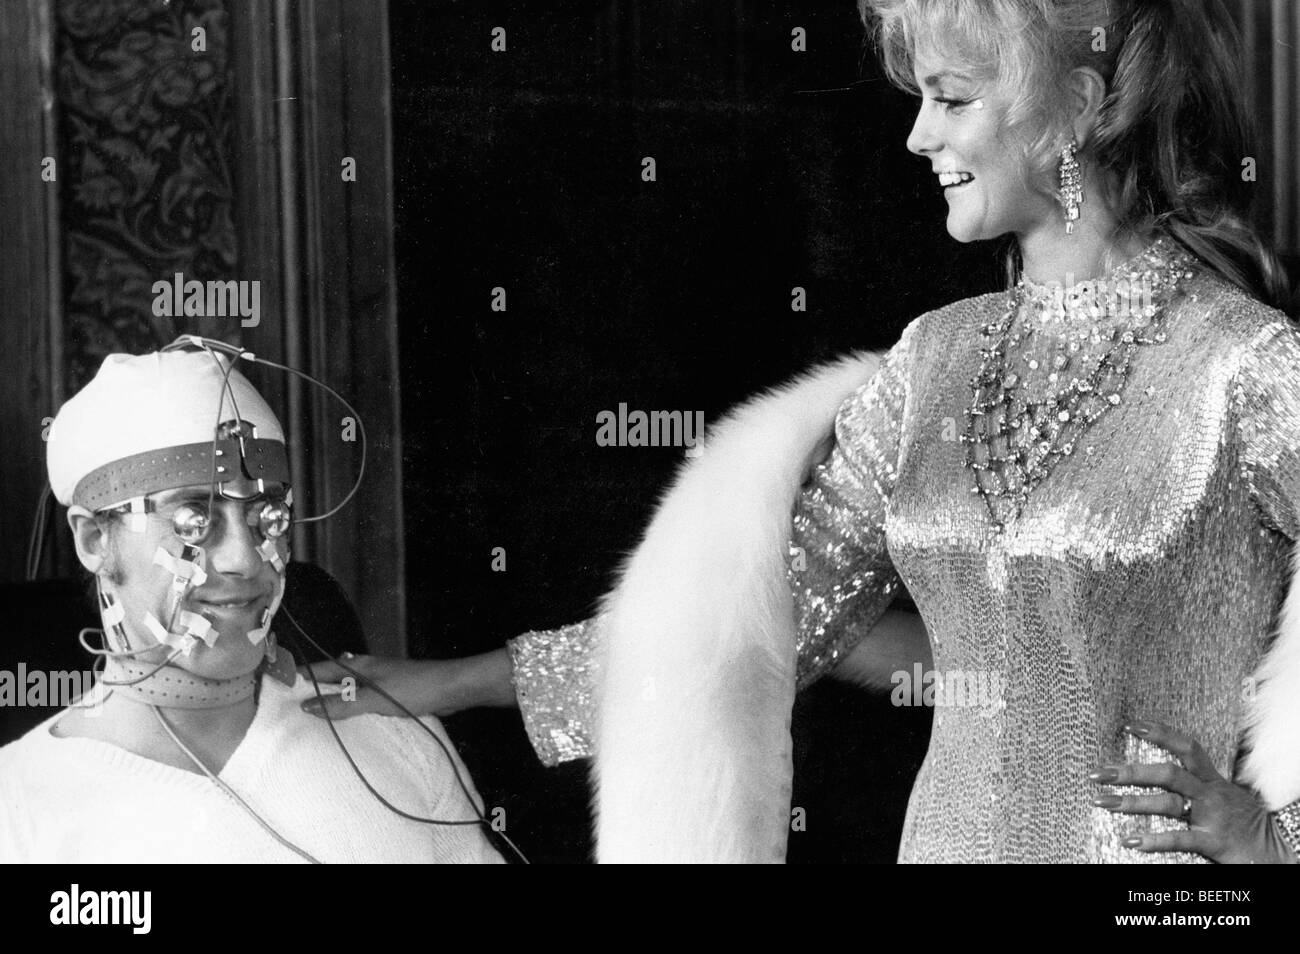 Sänger ROGER DALTREY, "Tommy" in der Rock-Oper mit dem gleichen Namen, genießt einen Witz mit der Schauspielerin ANN MARGARET. Stockfoto